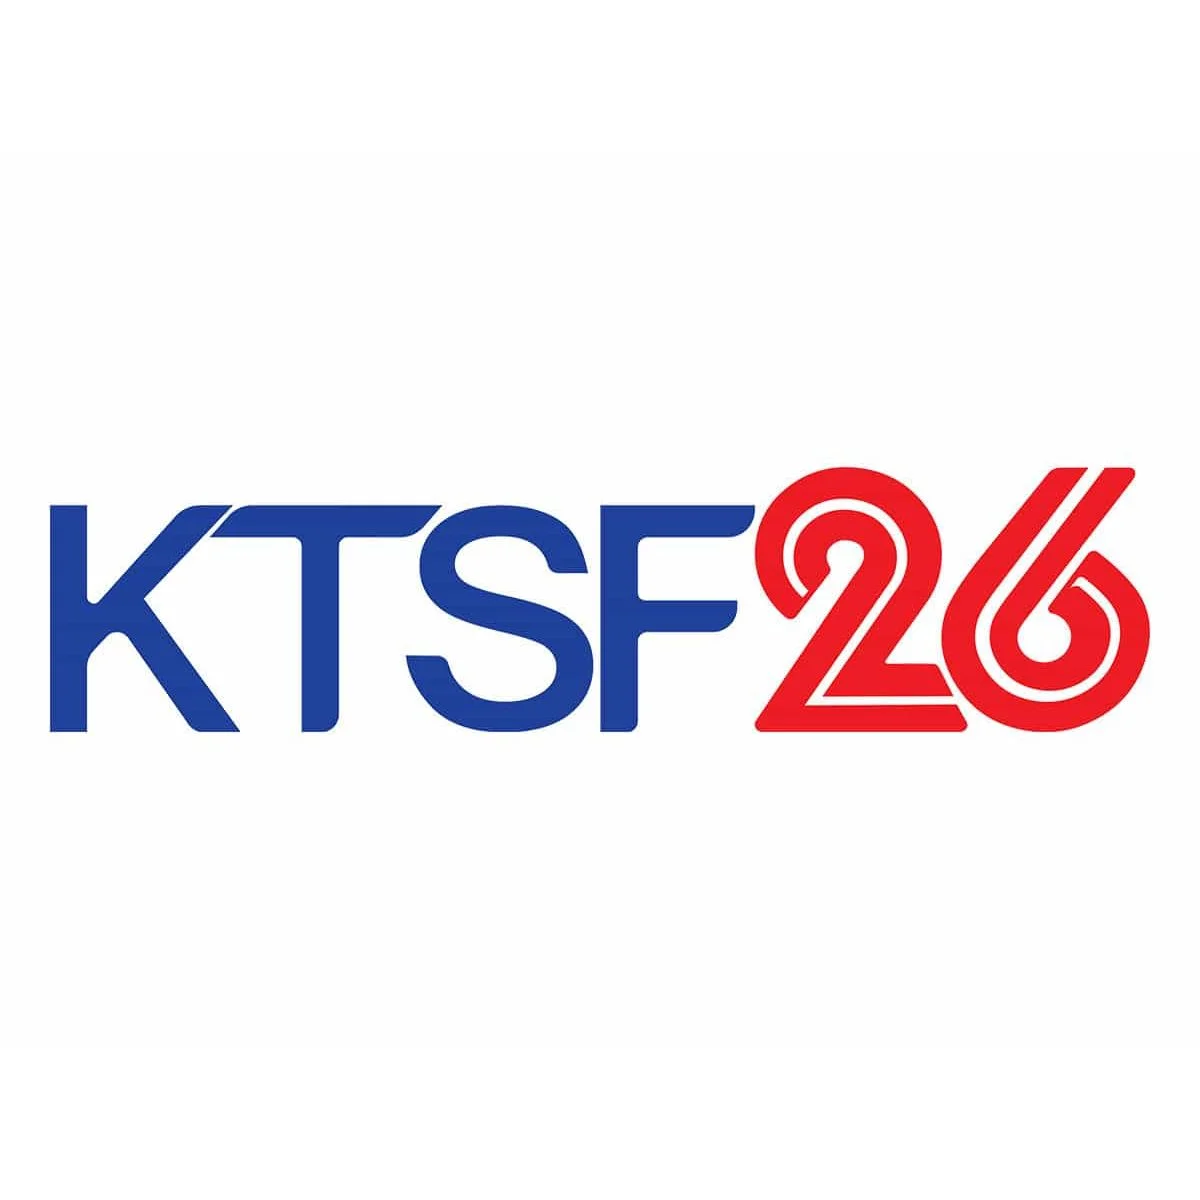 KTSF Channel 26